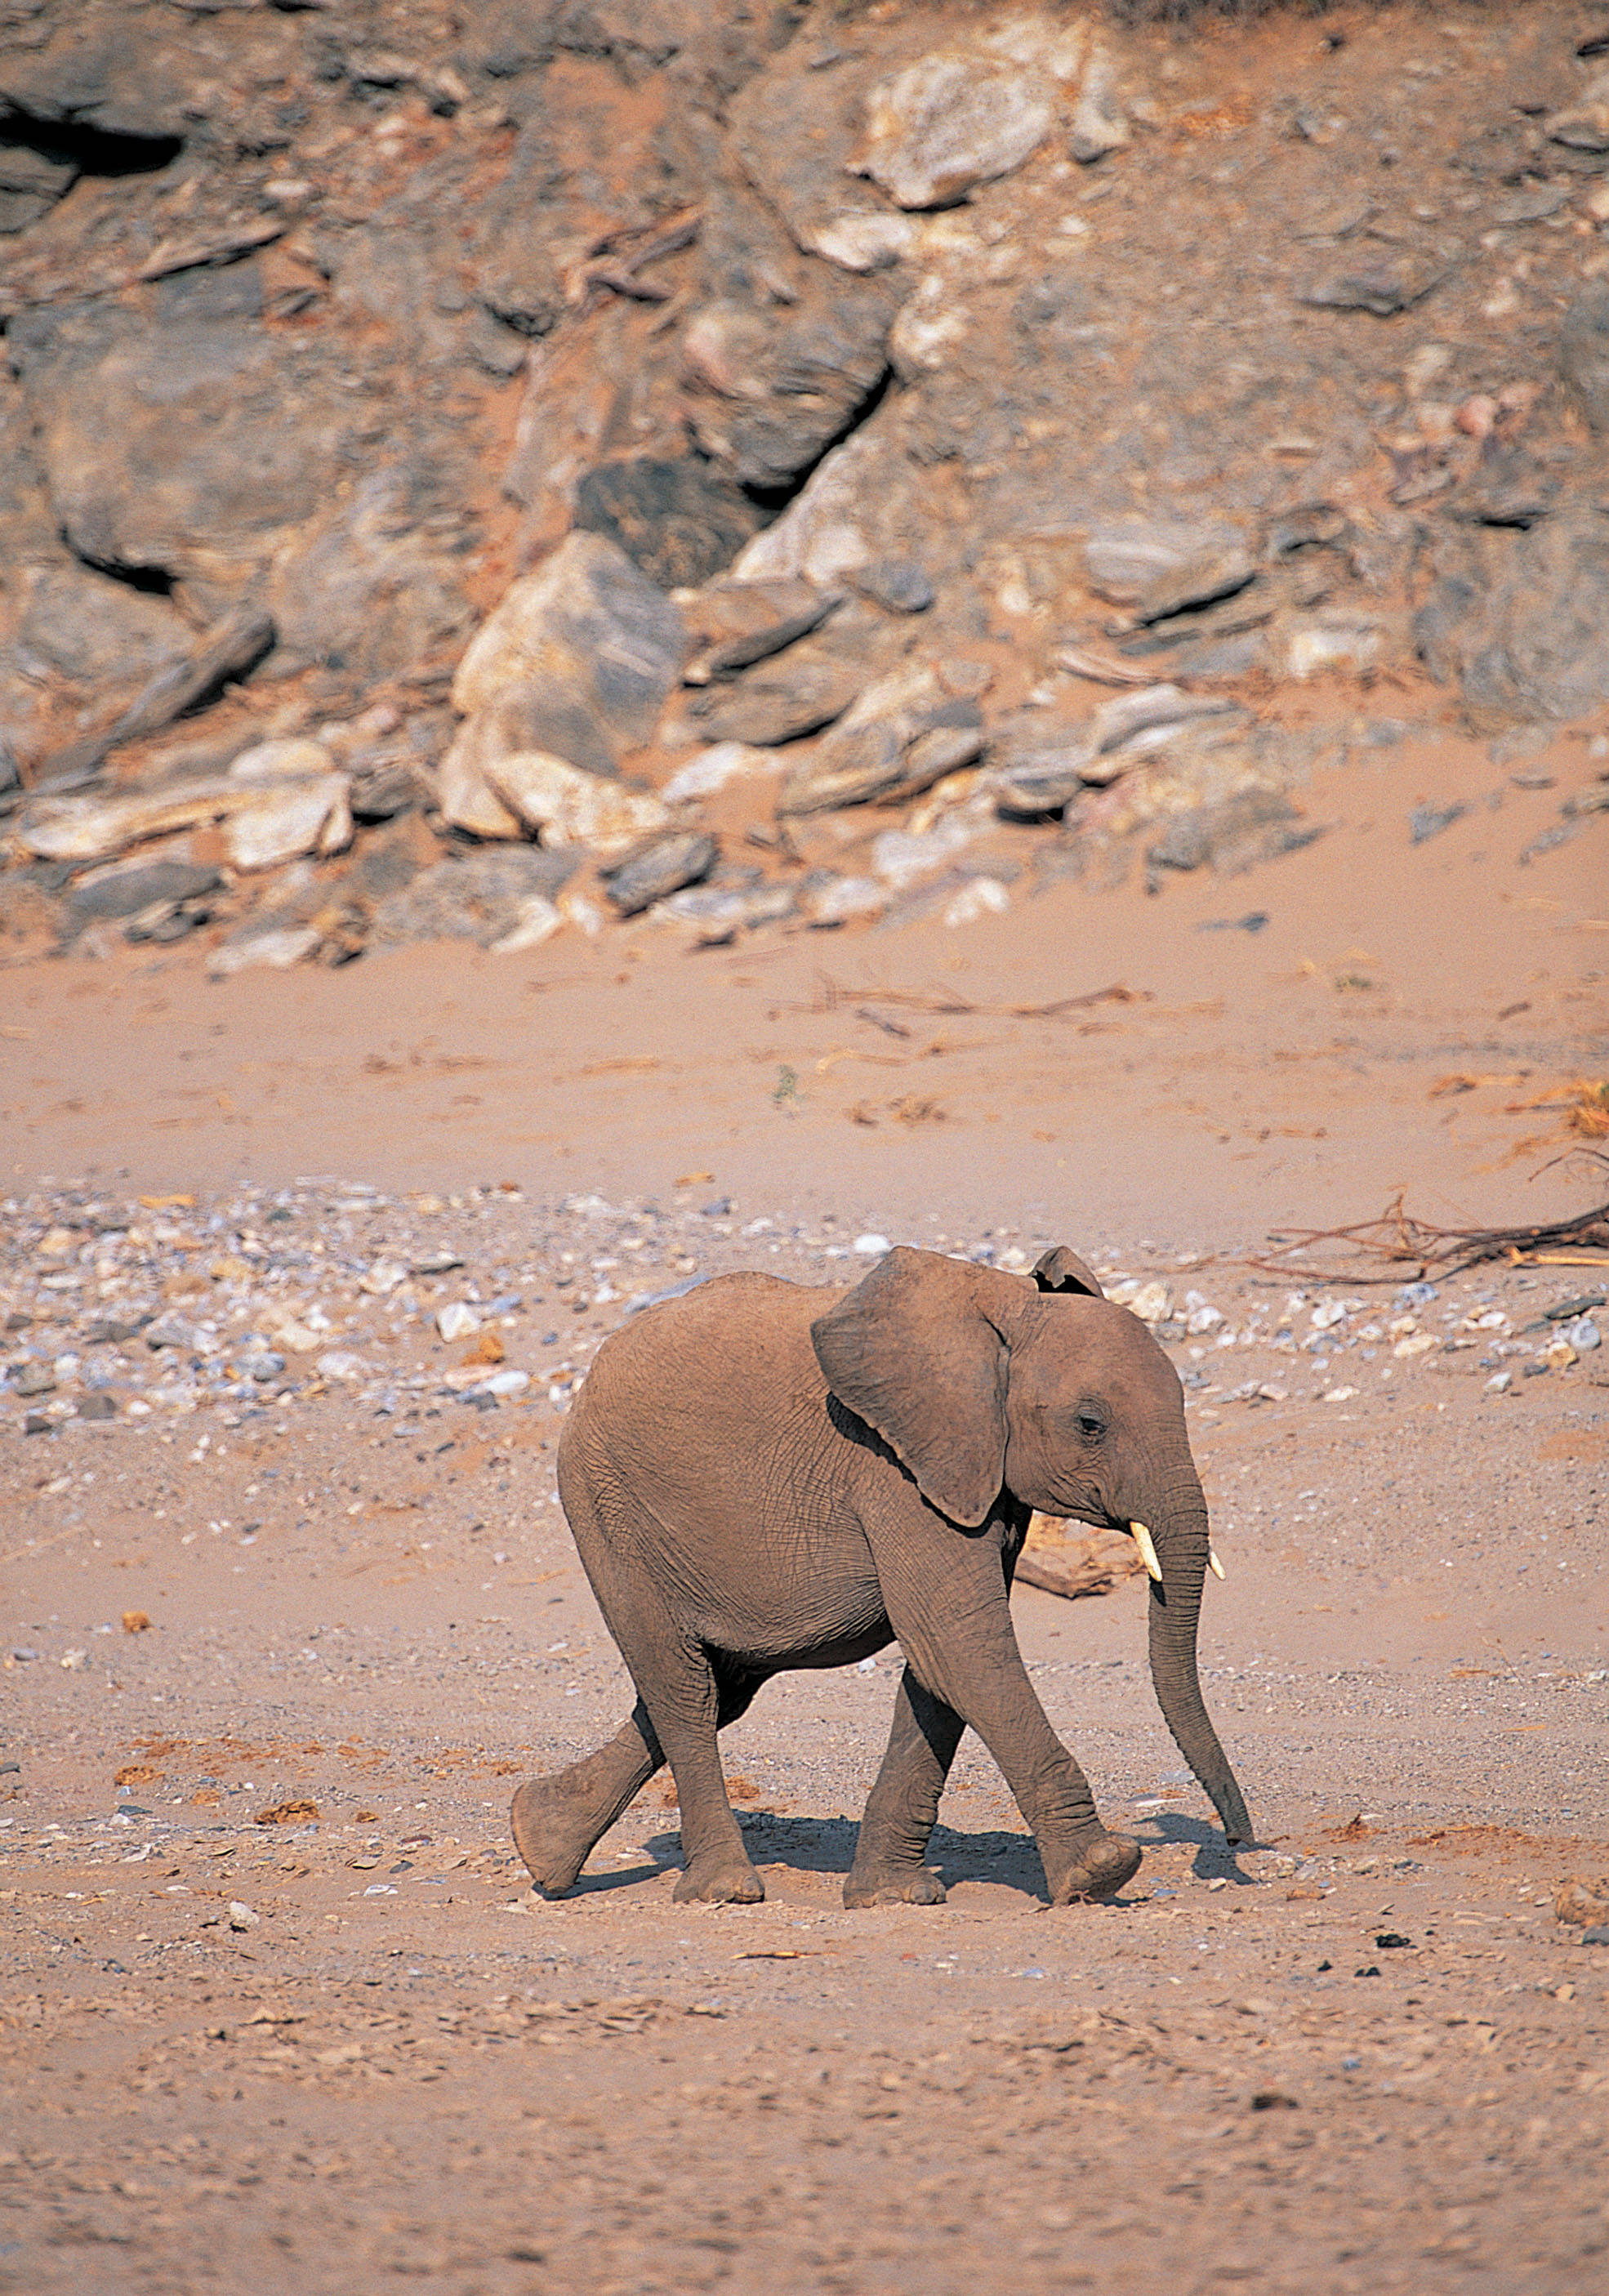 Elephant present. Слон. Фотография слона. Слоненок с боку. Слон настоящий.